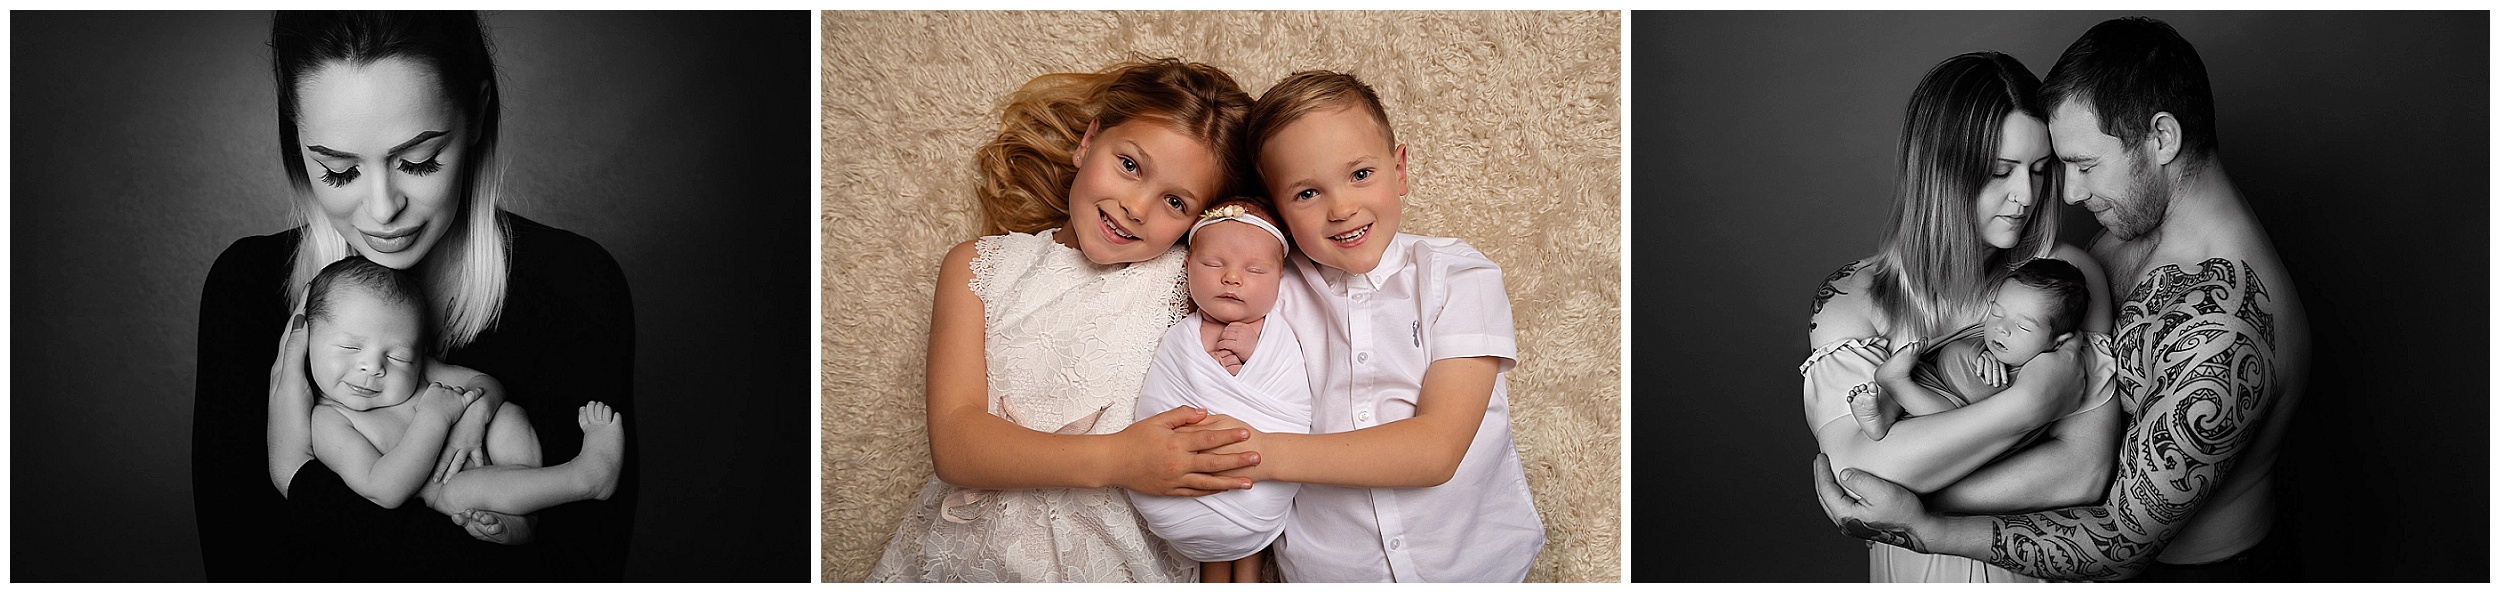 Newborn Baby Photographer Yorkshire | Baby Photo Shoots